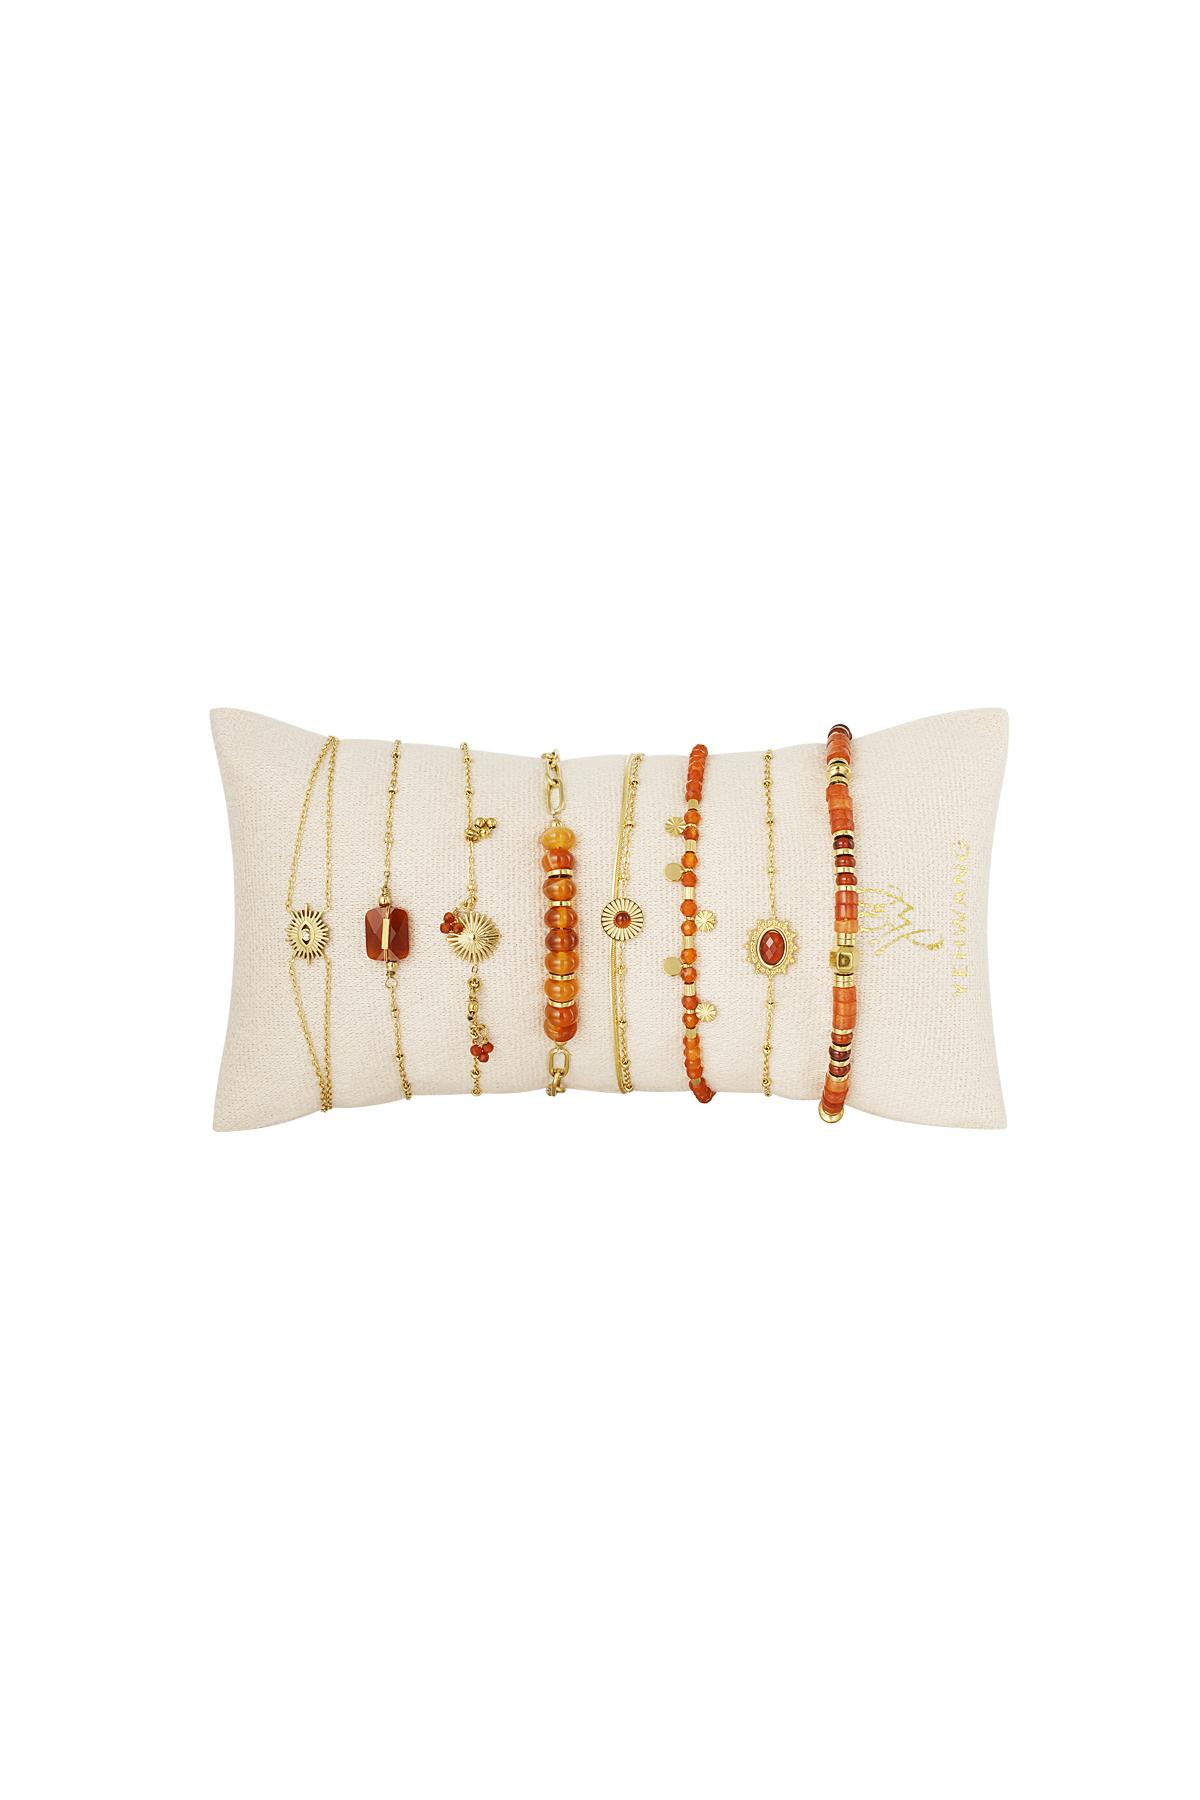 Conjunto de joyas de exhibición de pulseras colorido Naranja &amp; Oro Acero inoxidable